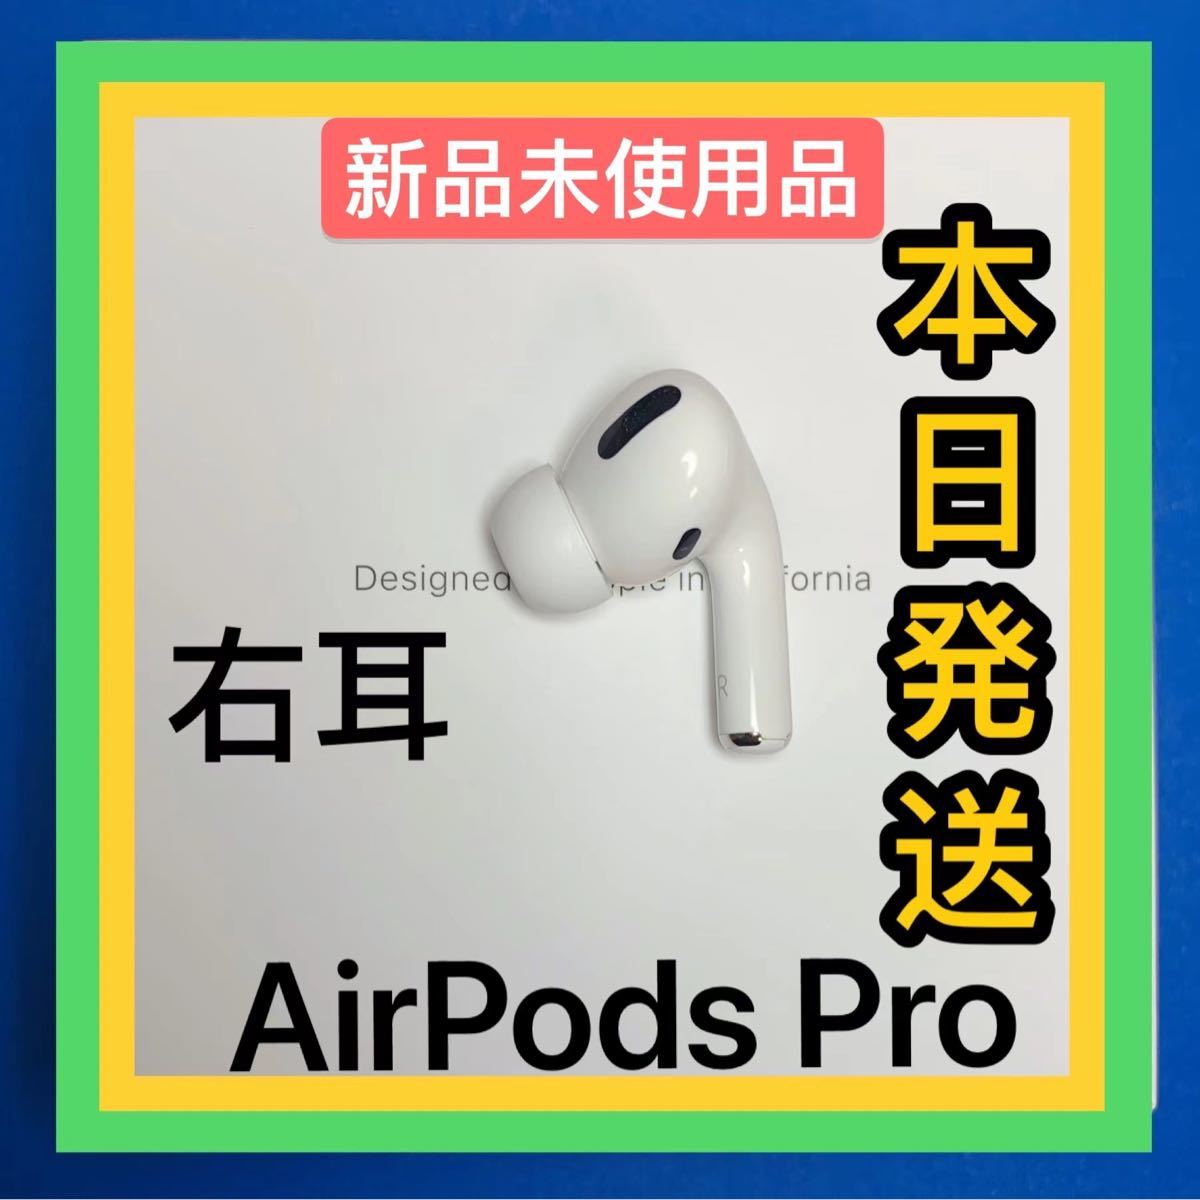 ディズニープリンセスのベビーグッズも大集合 新品 エアーポッズプロ Pro オーディオ機器 AirPods 右耳のみ Apple R片耳 o E  setto